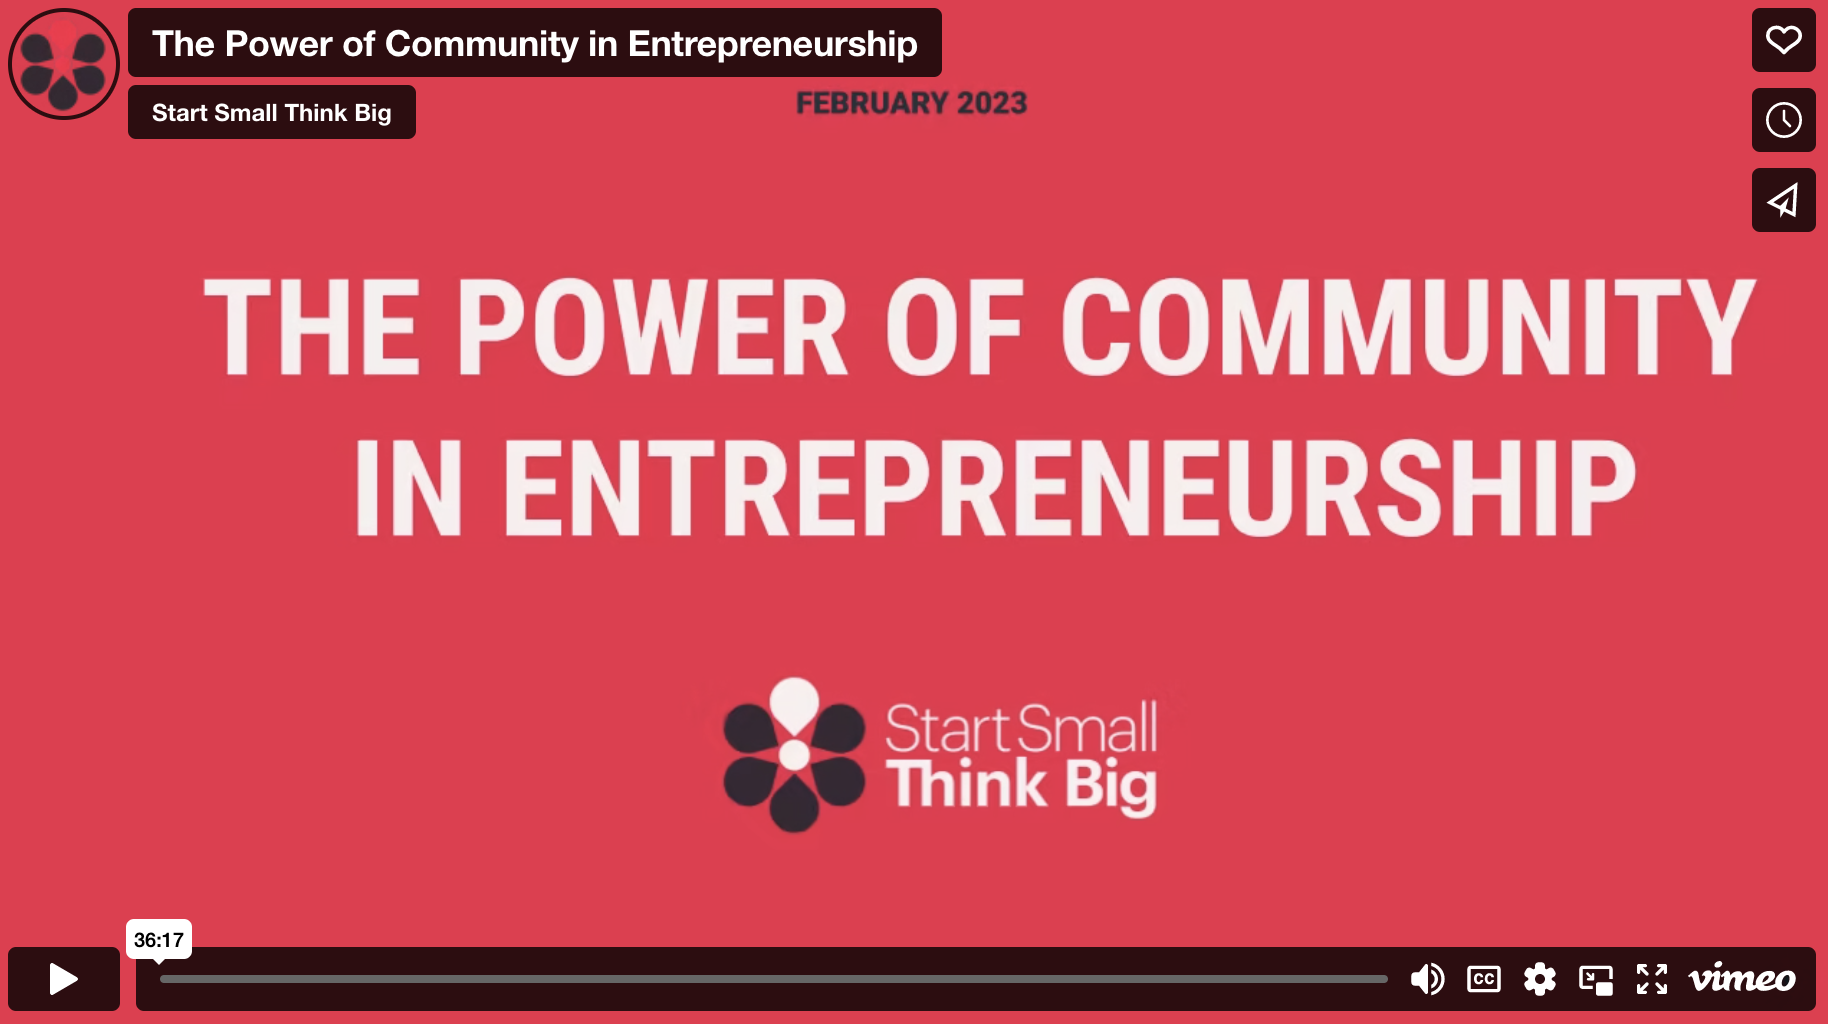 The Power of Community in Entrepreneurship